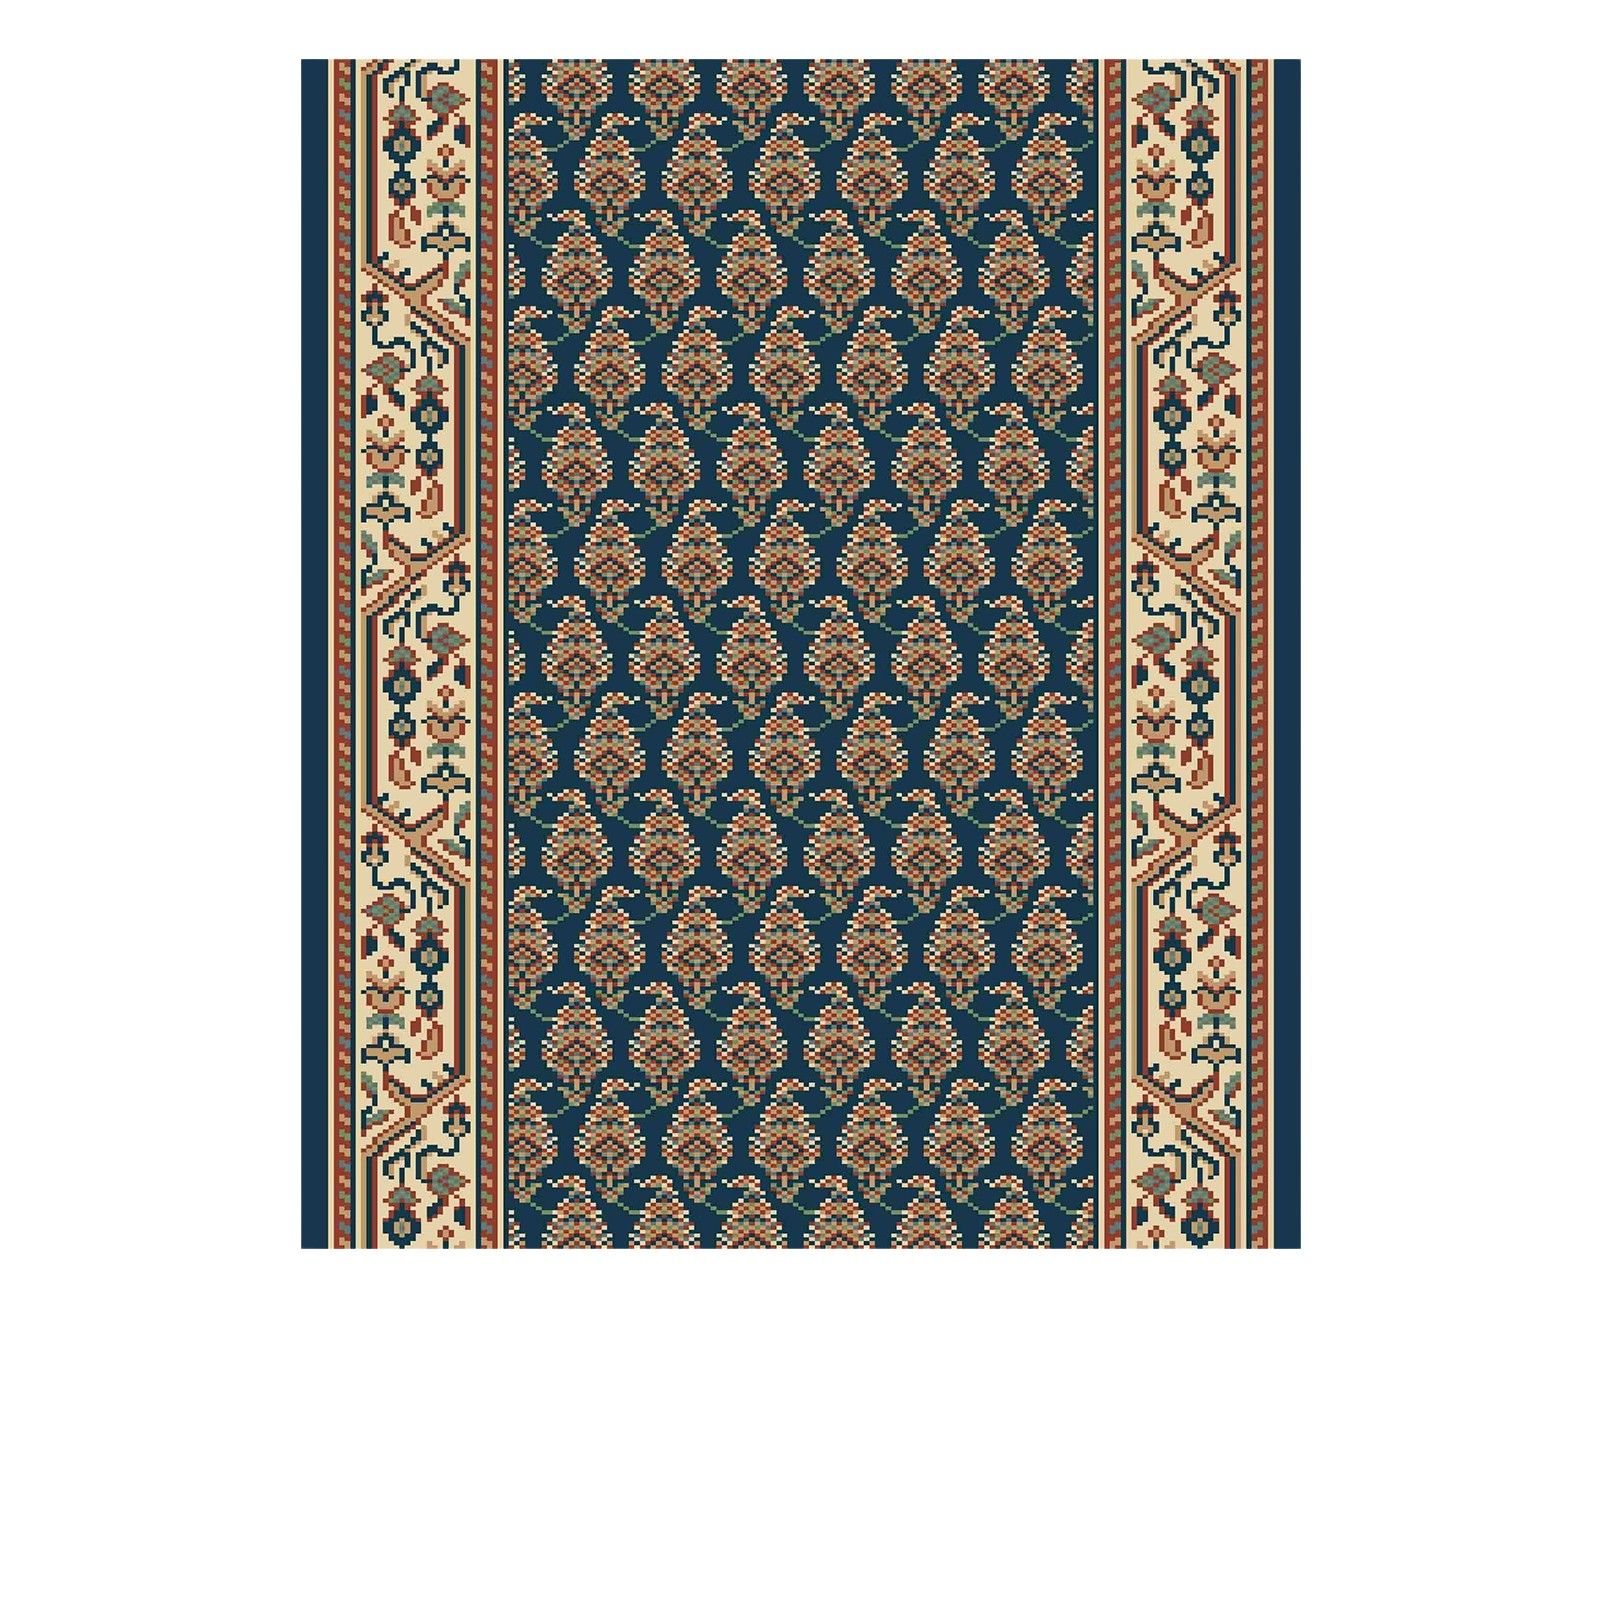 Victorian Stair Carpet Runner - style AV59110 in Navy Pattern